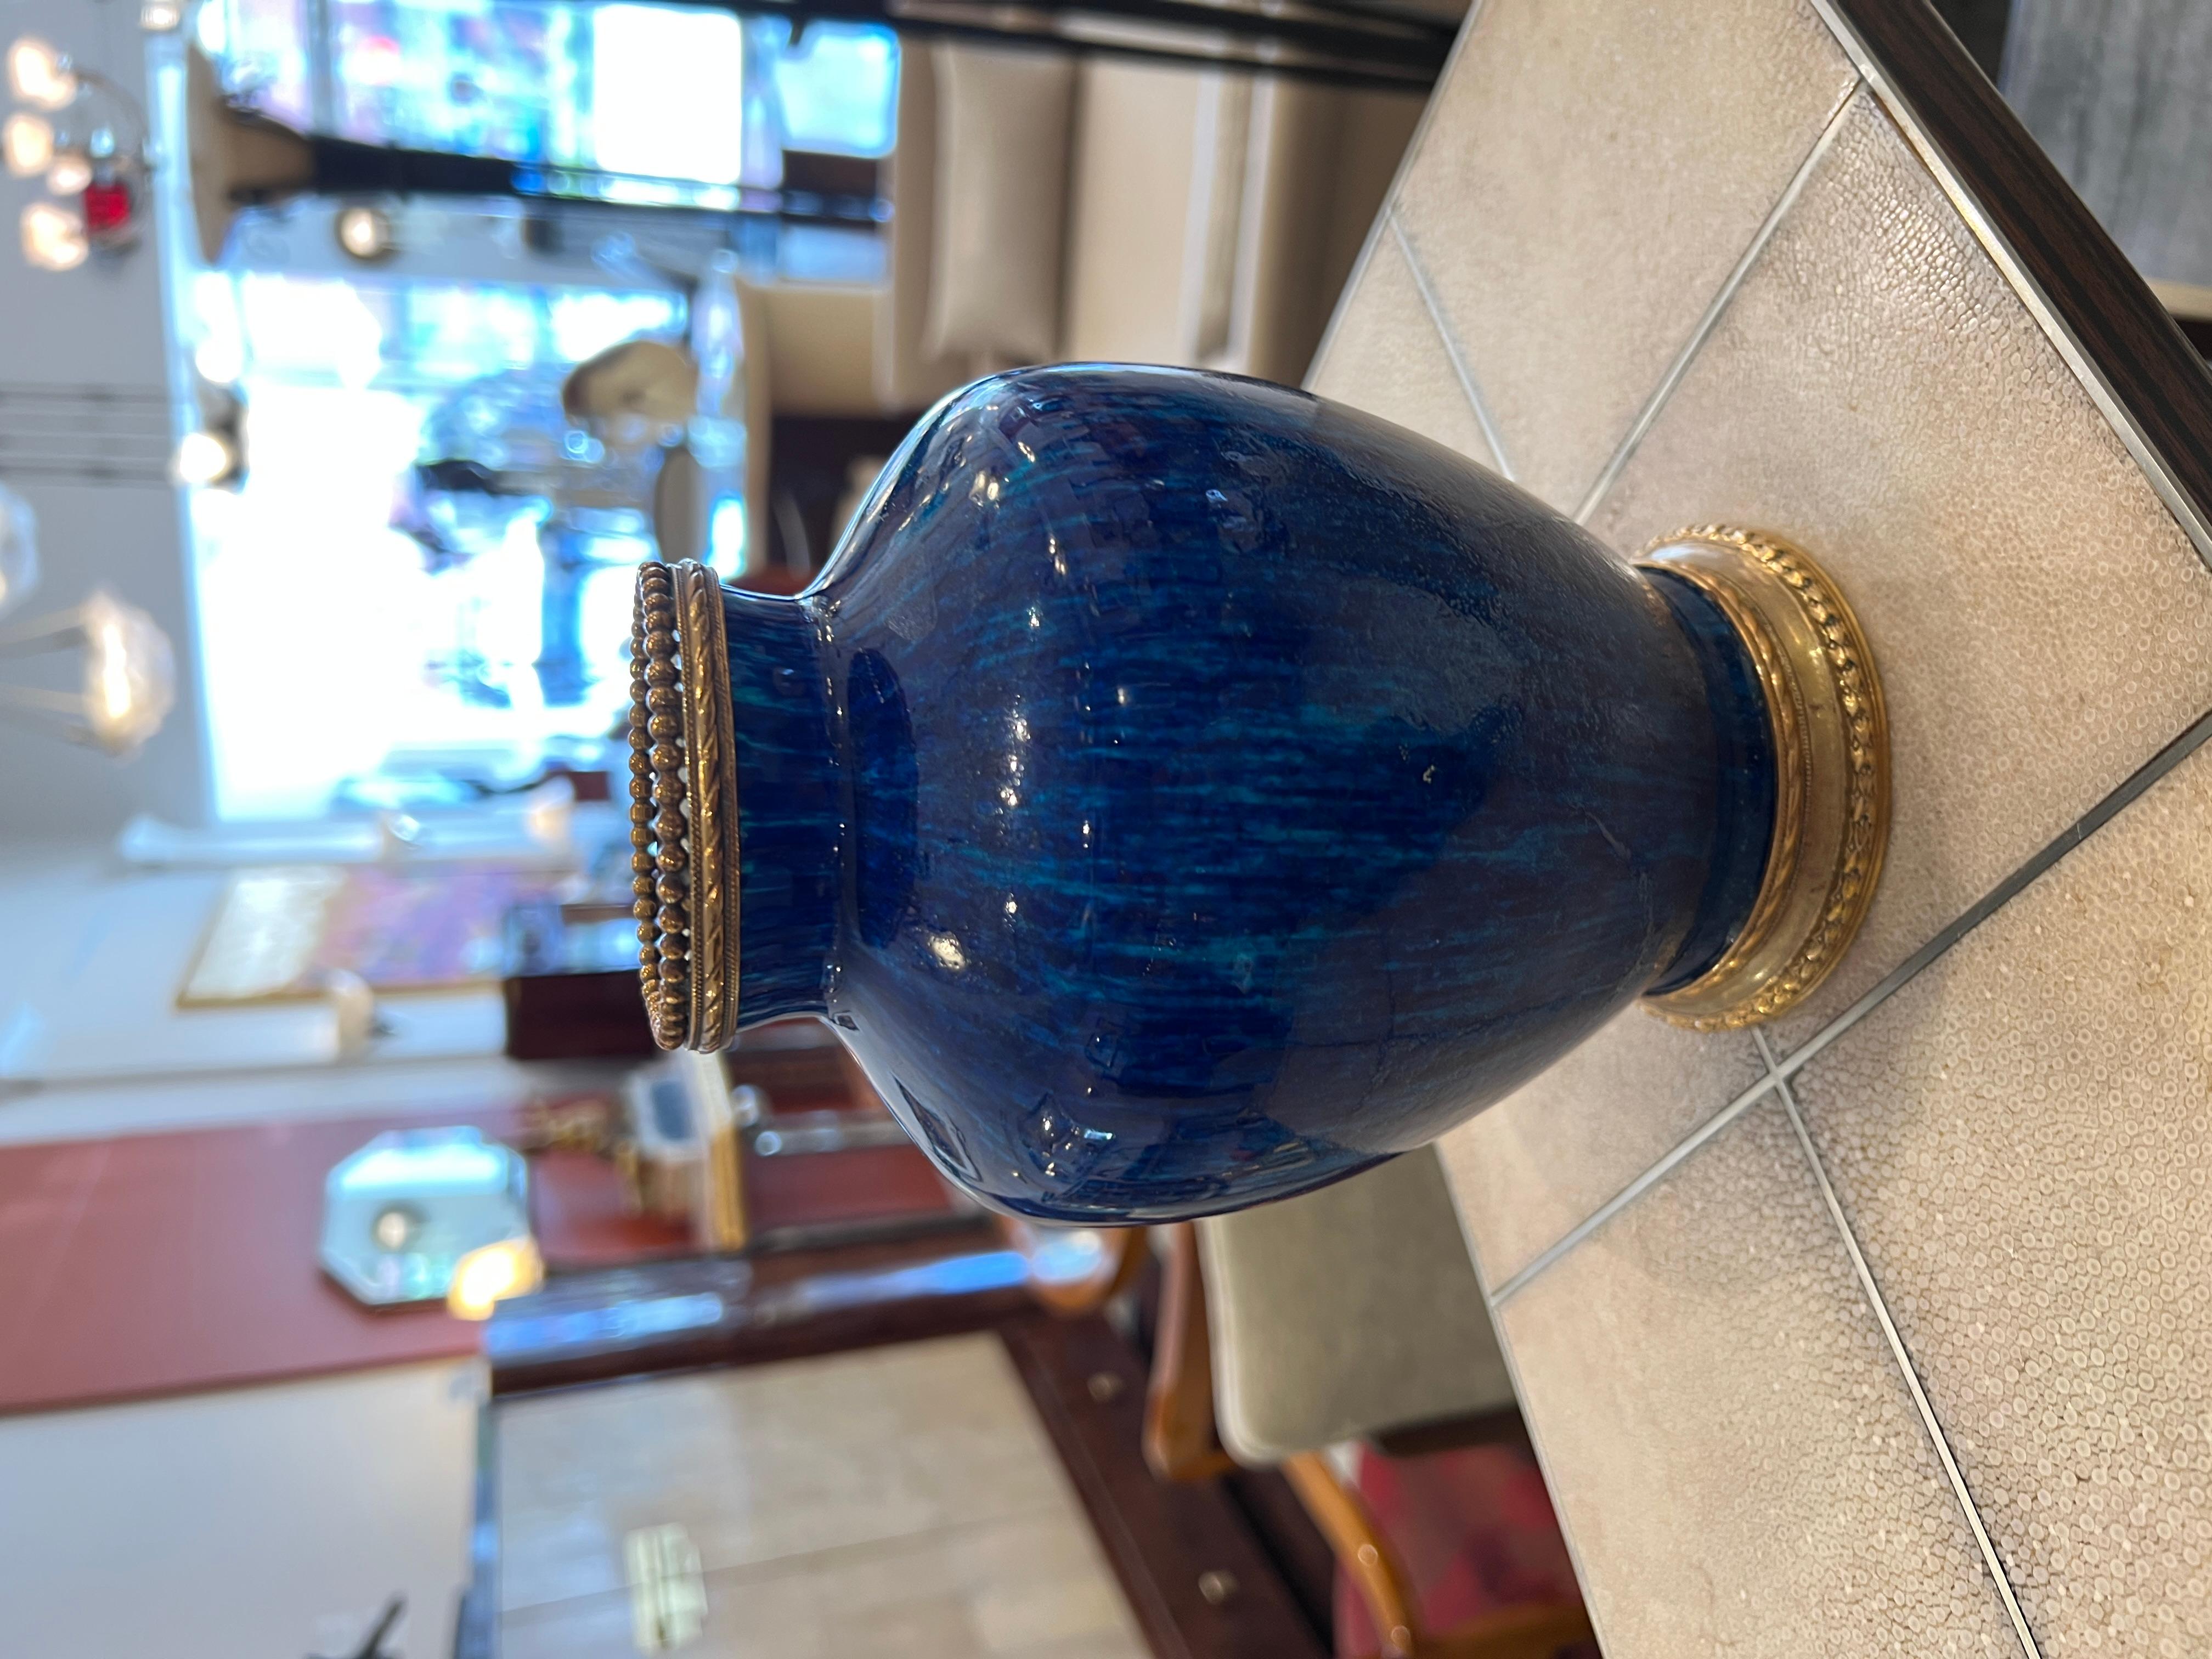 Art Deco Vase aus glasierter kobaltblauer Keramik mit Bronzedetails.

Unterschrift: Boch